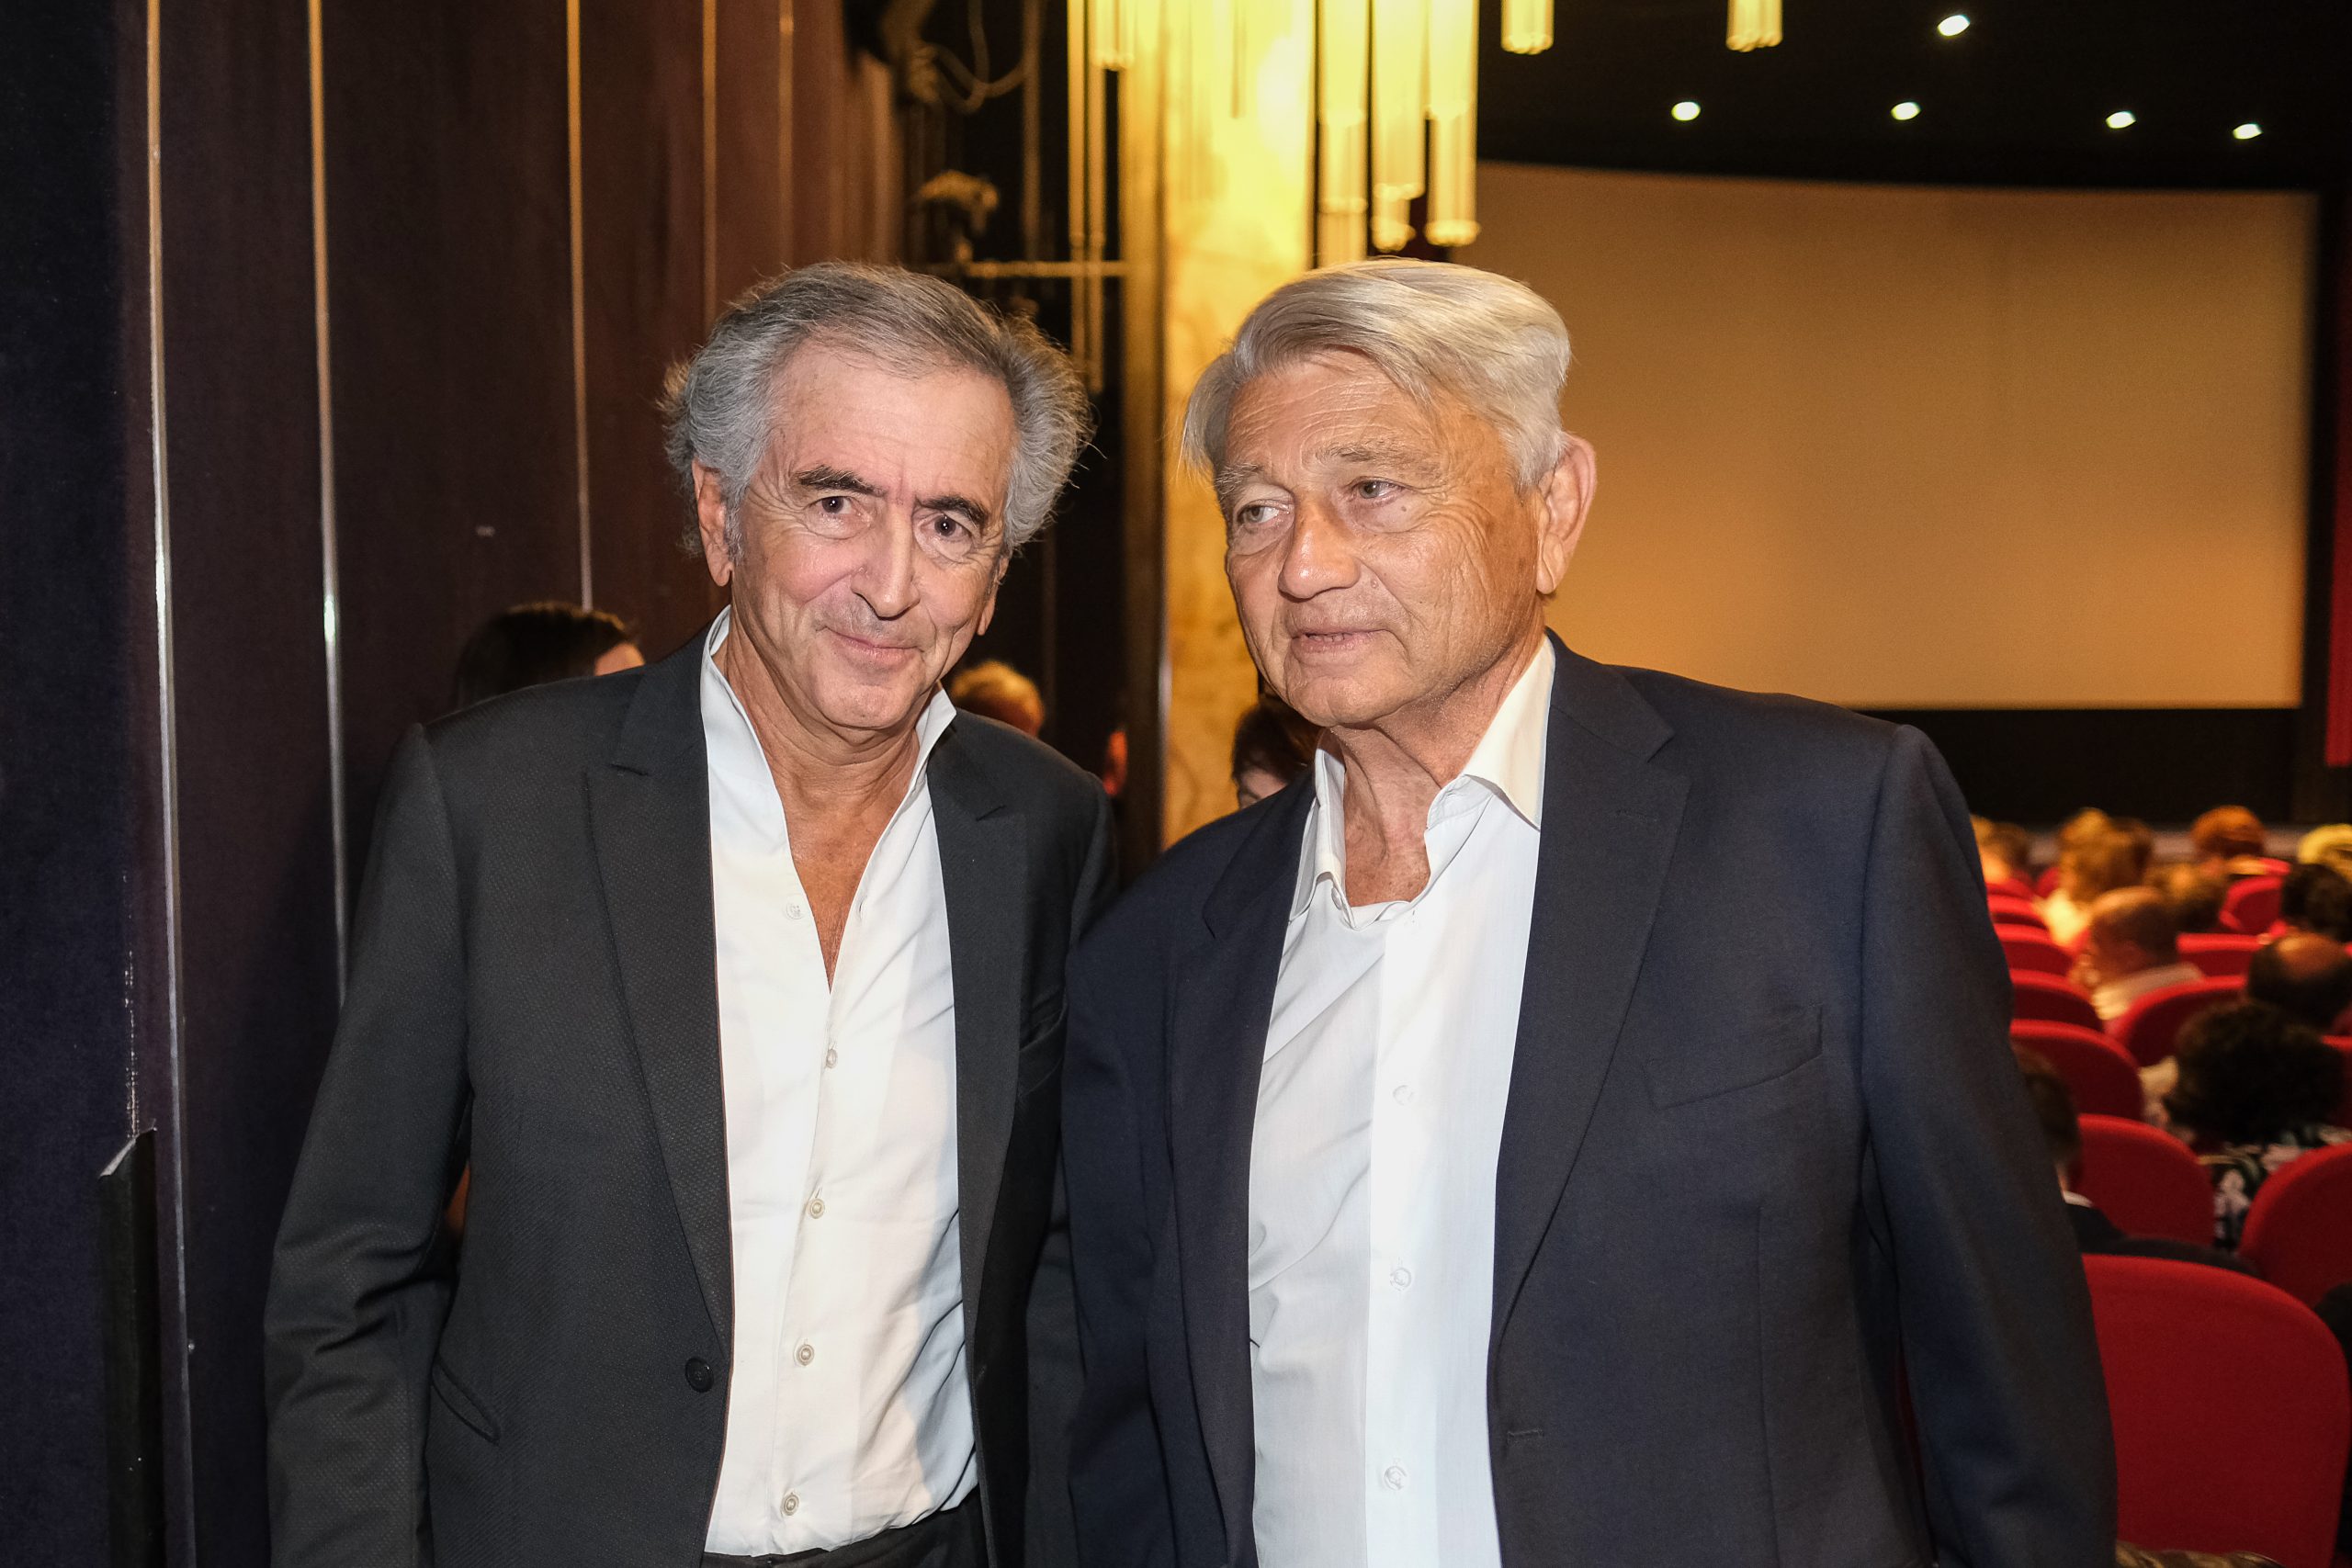 Bernard-Henri Lévy et Alain Madelin dans une salle de cinéma.